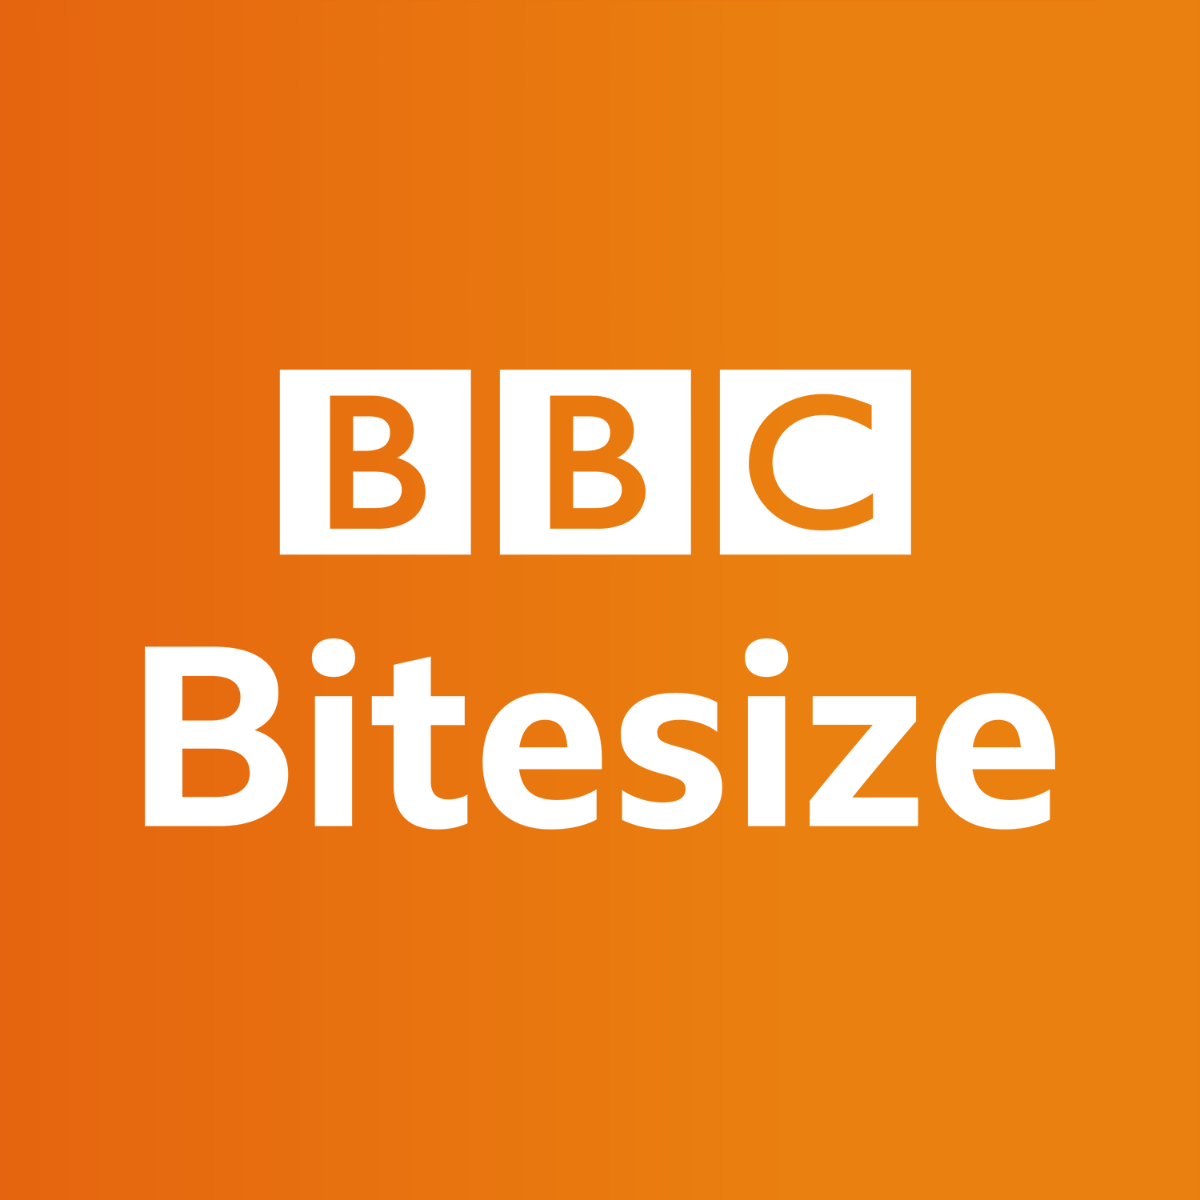 bbcbitesize logo